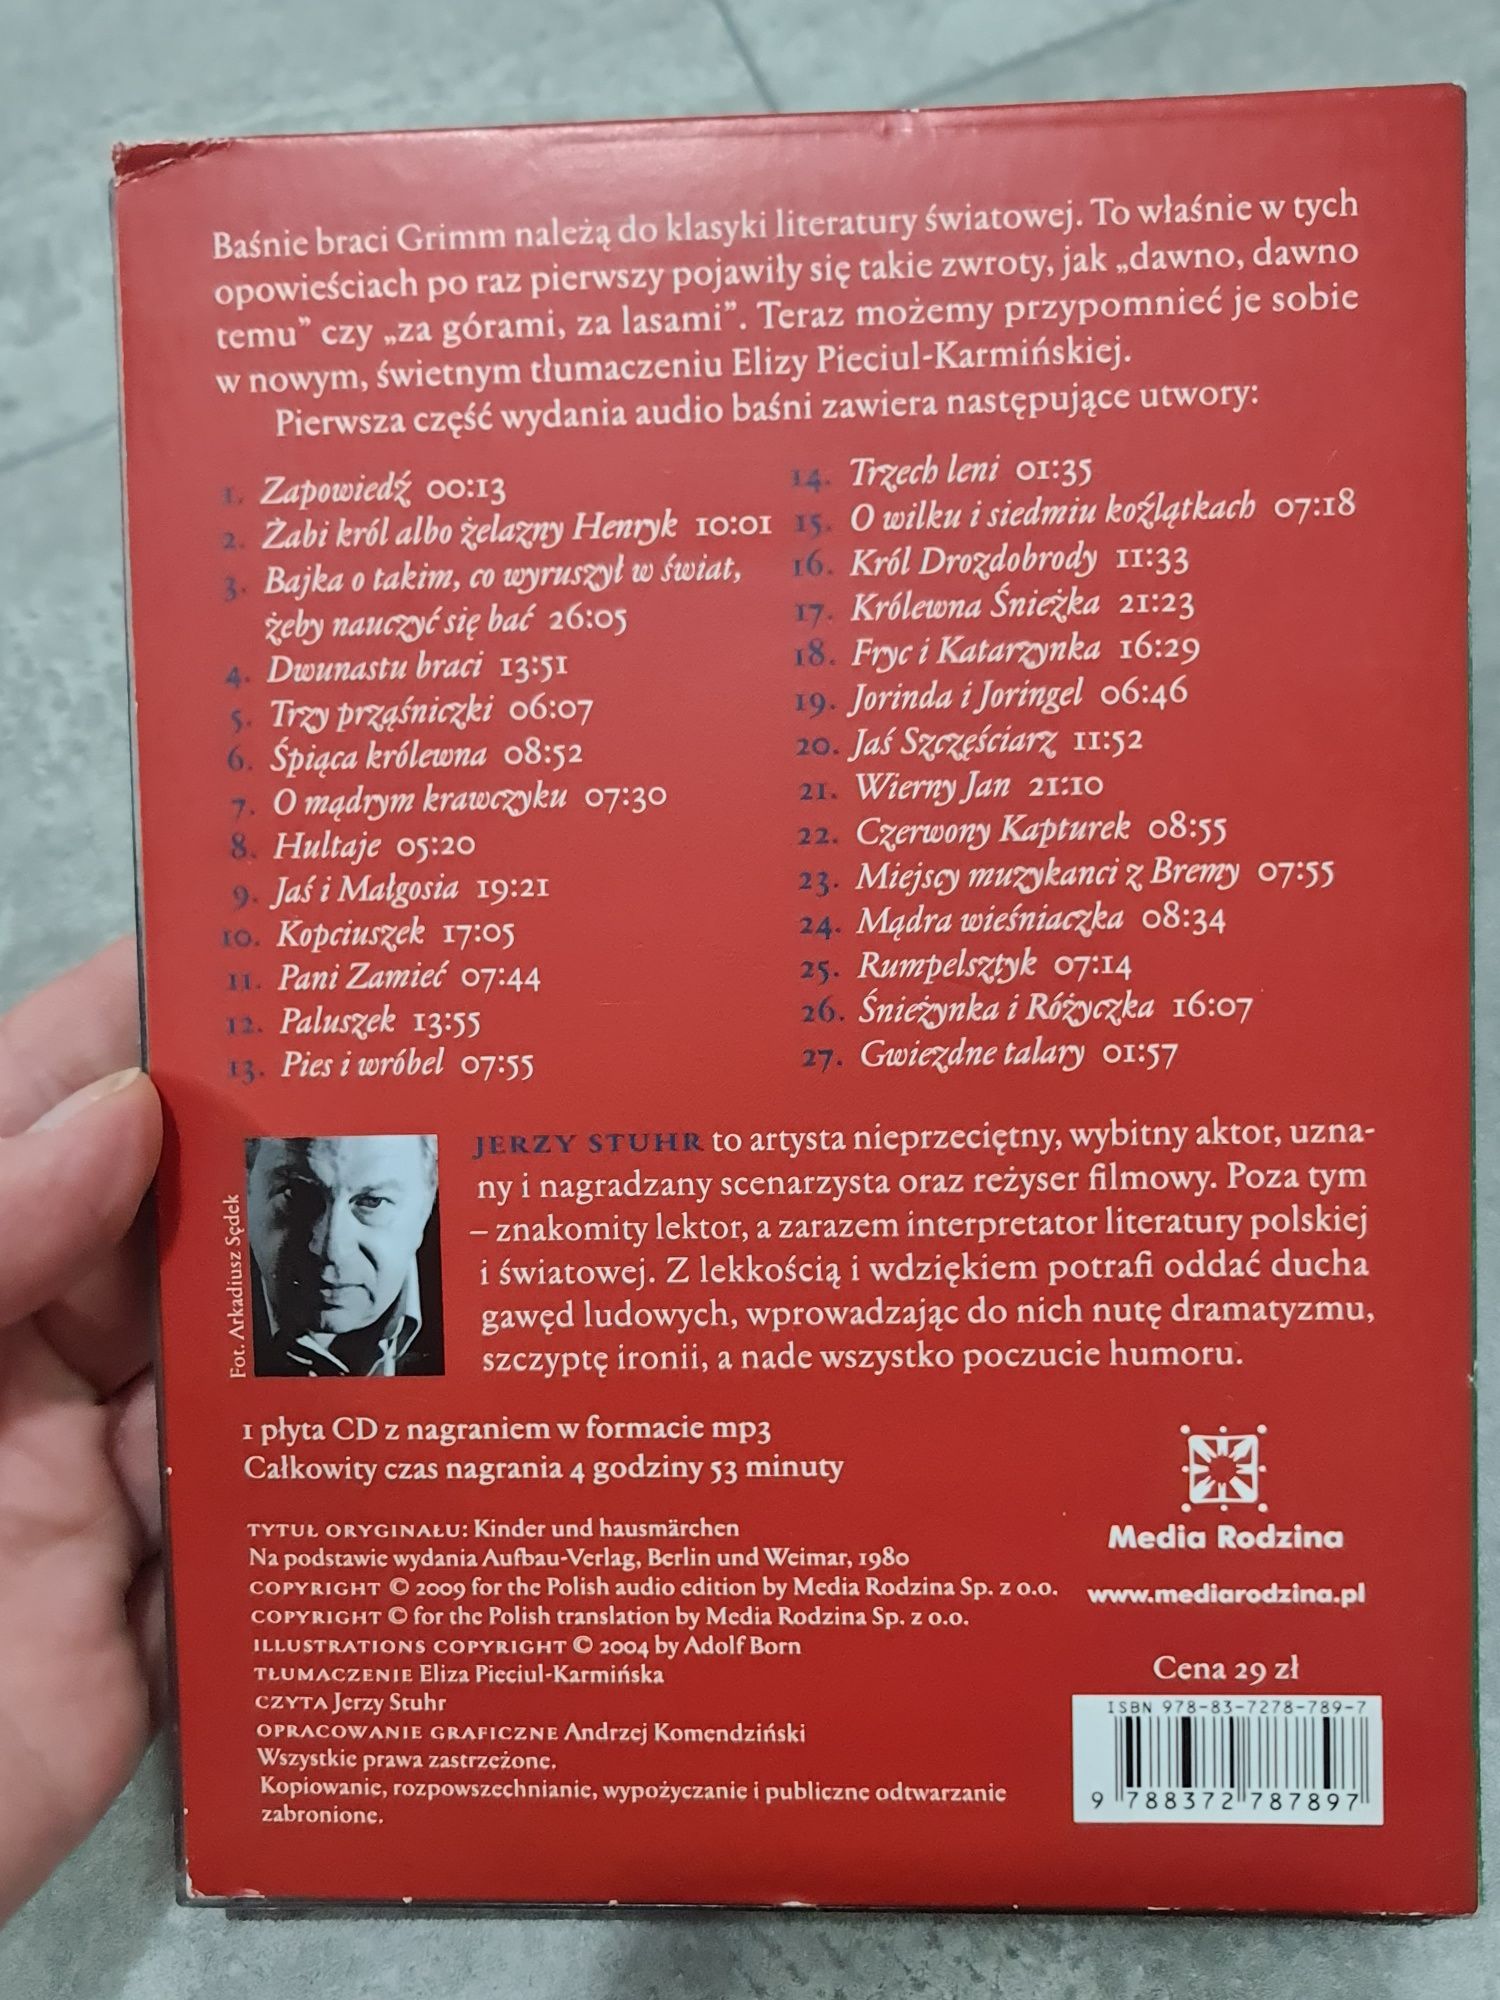 2x CD Baśnie braci Grimm czyta Jerzy Stuhr